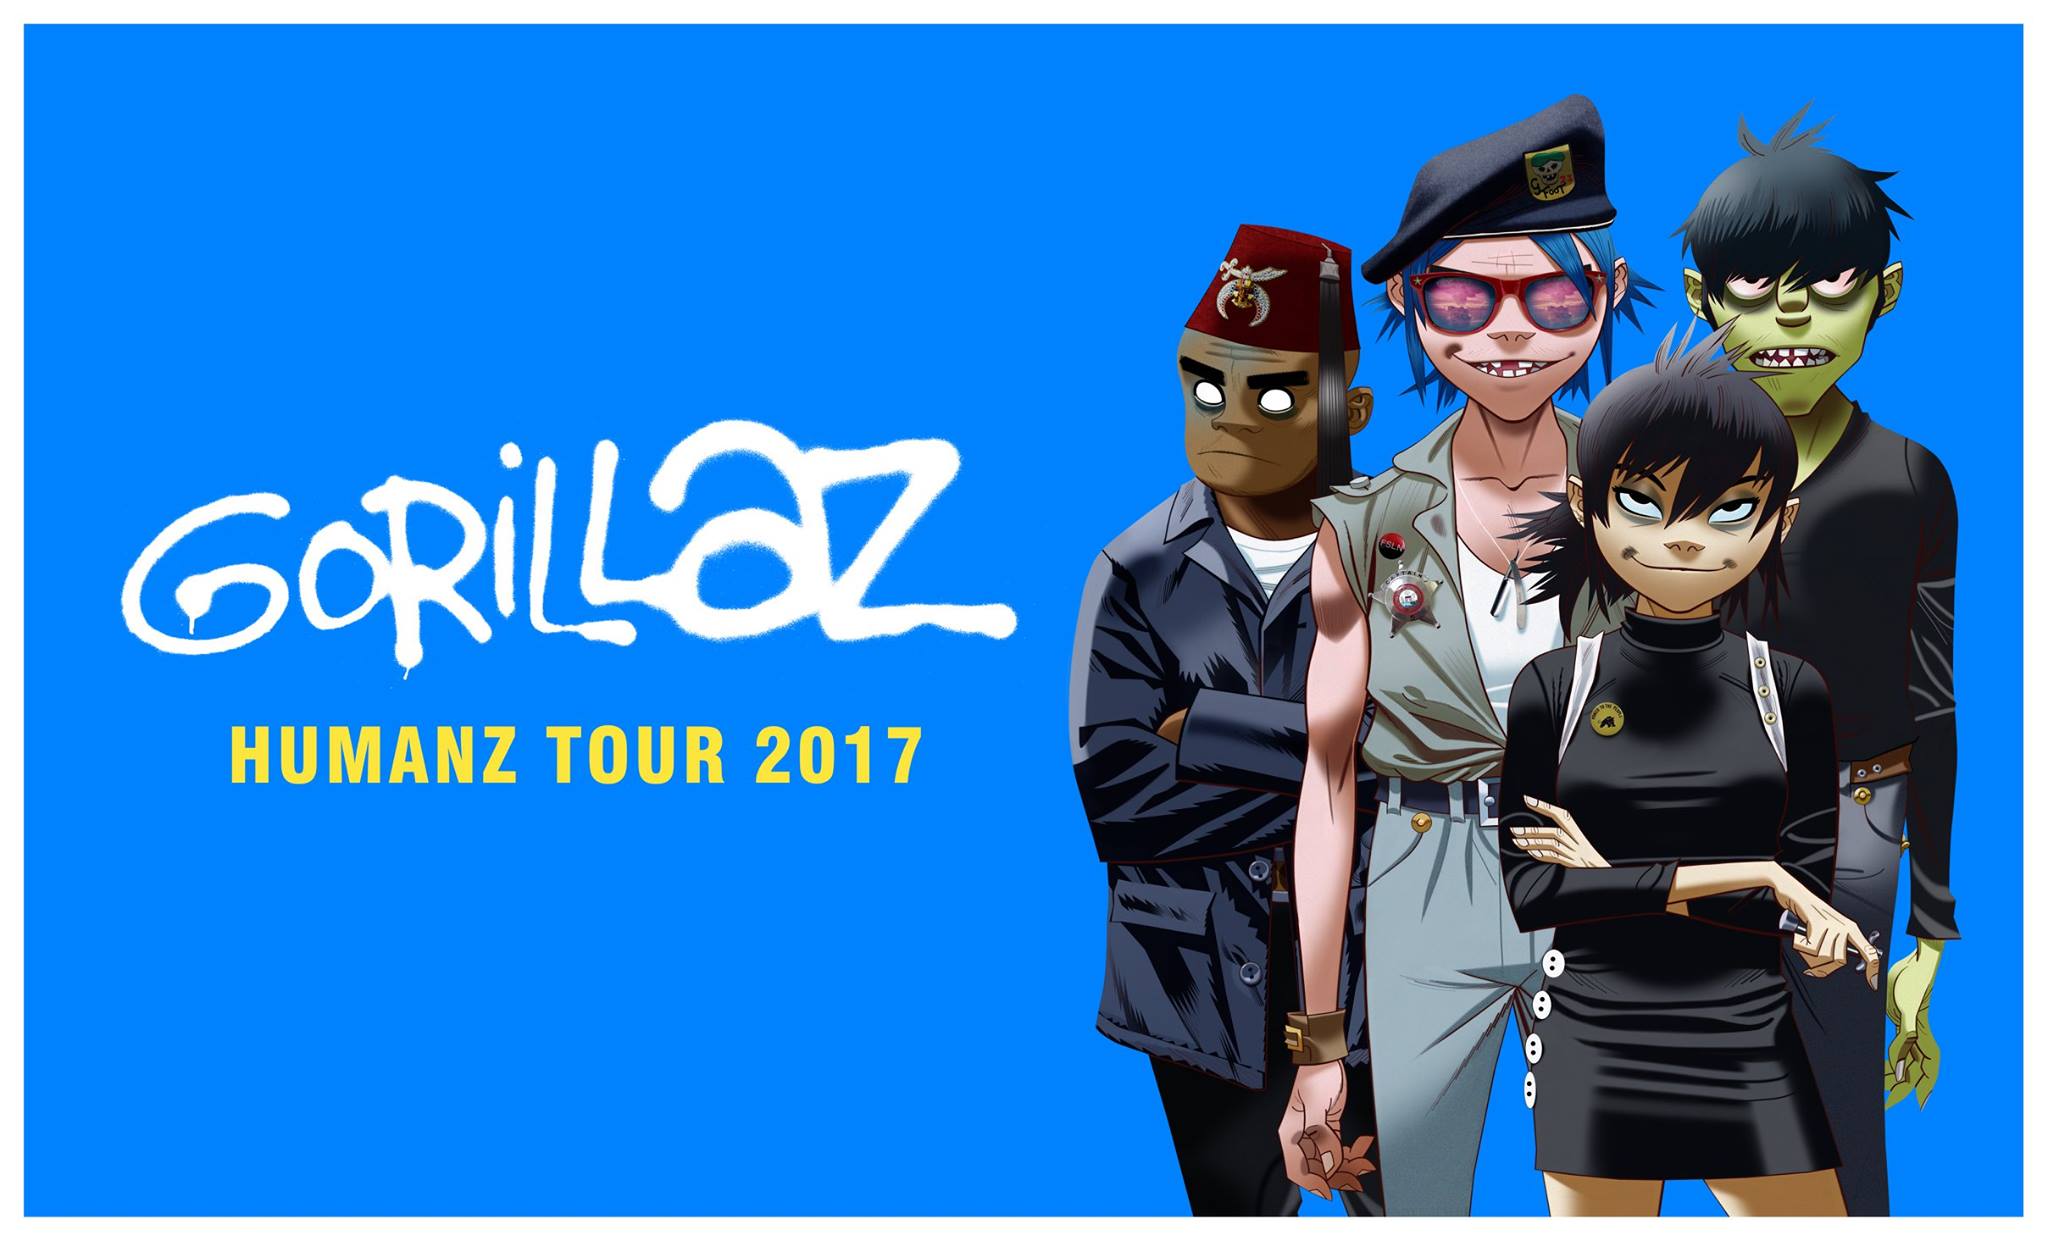 Gorillaz kündigen HUMANZ-Tour 2017 an